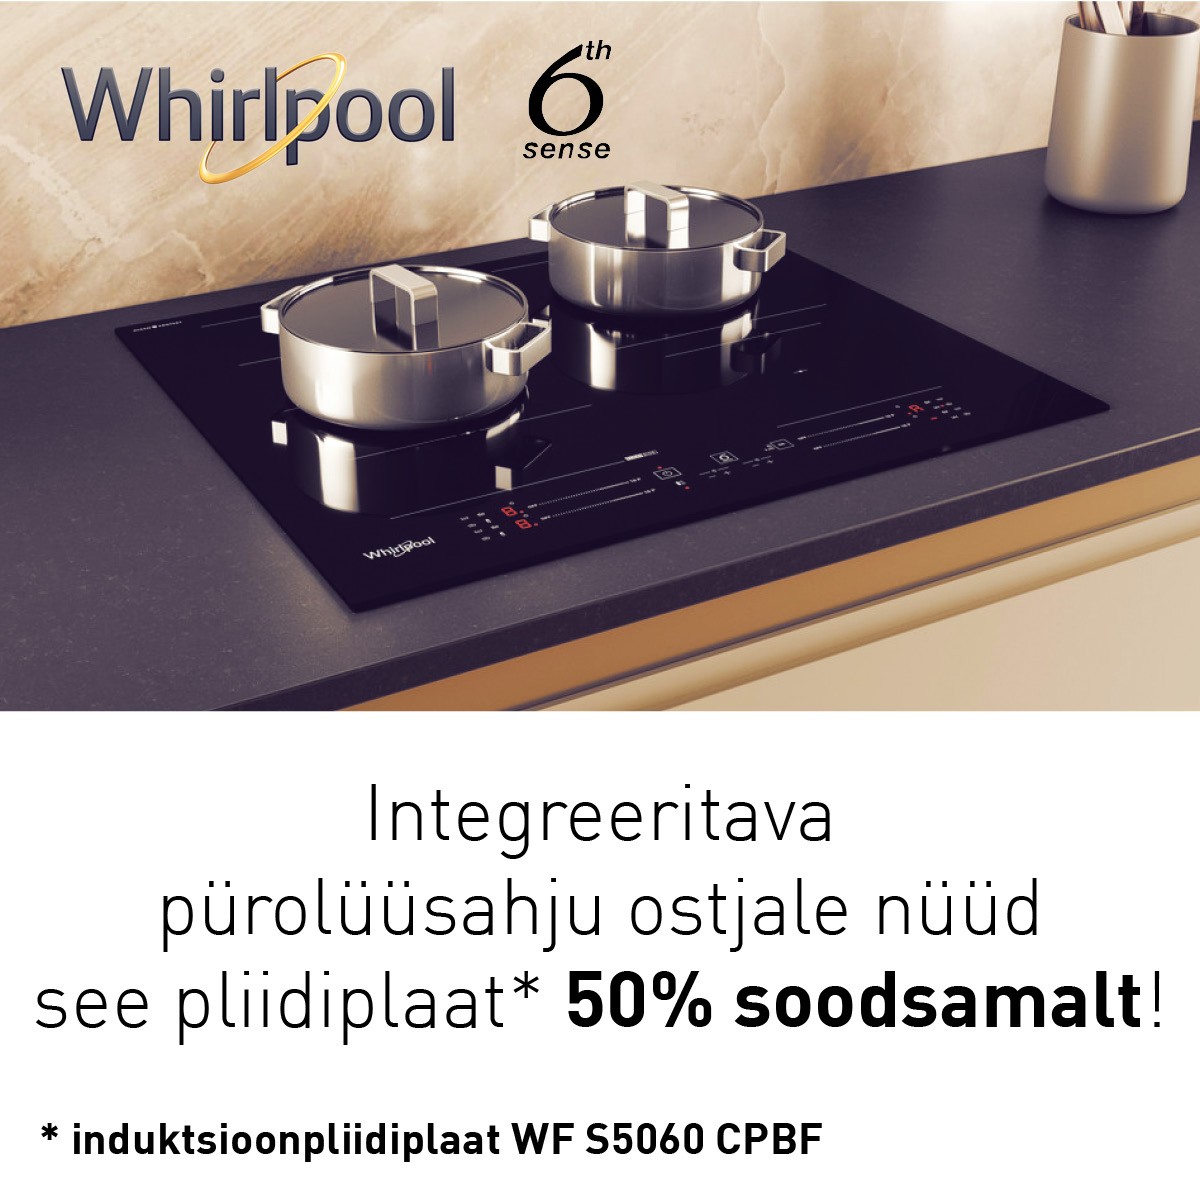 Osta Whirlpool integreeritav pürolüüspuhastusega ahi, saad WF S5060 CPBF induktsioonplaadi -50%